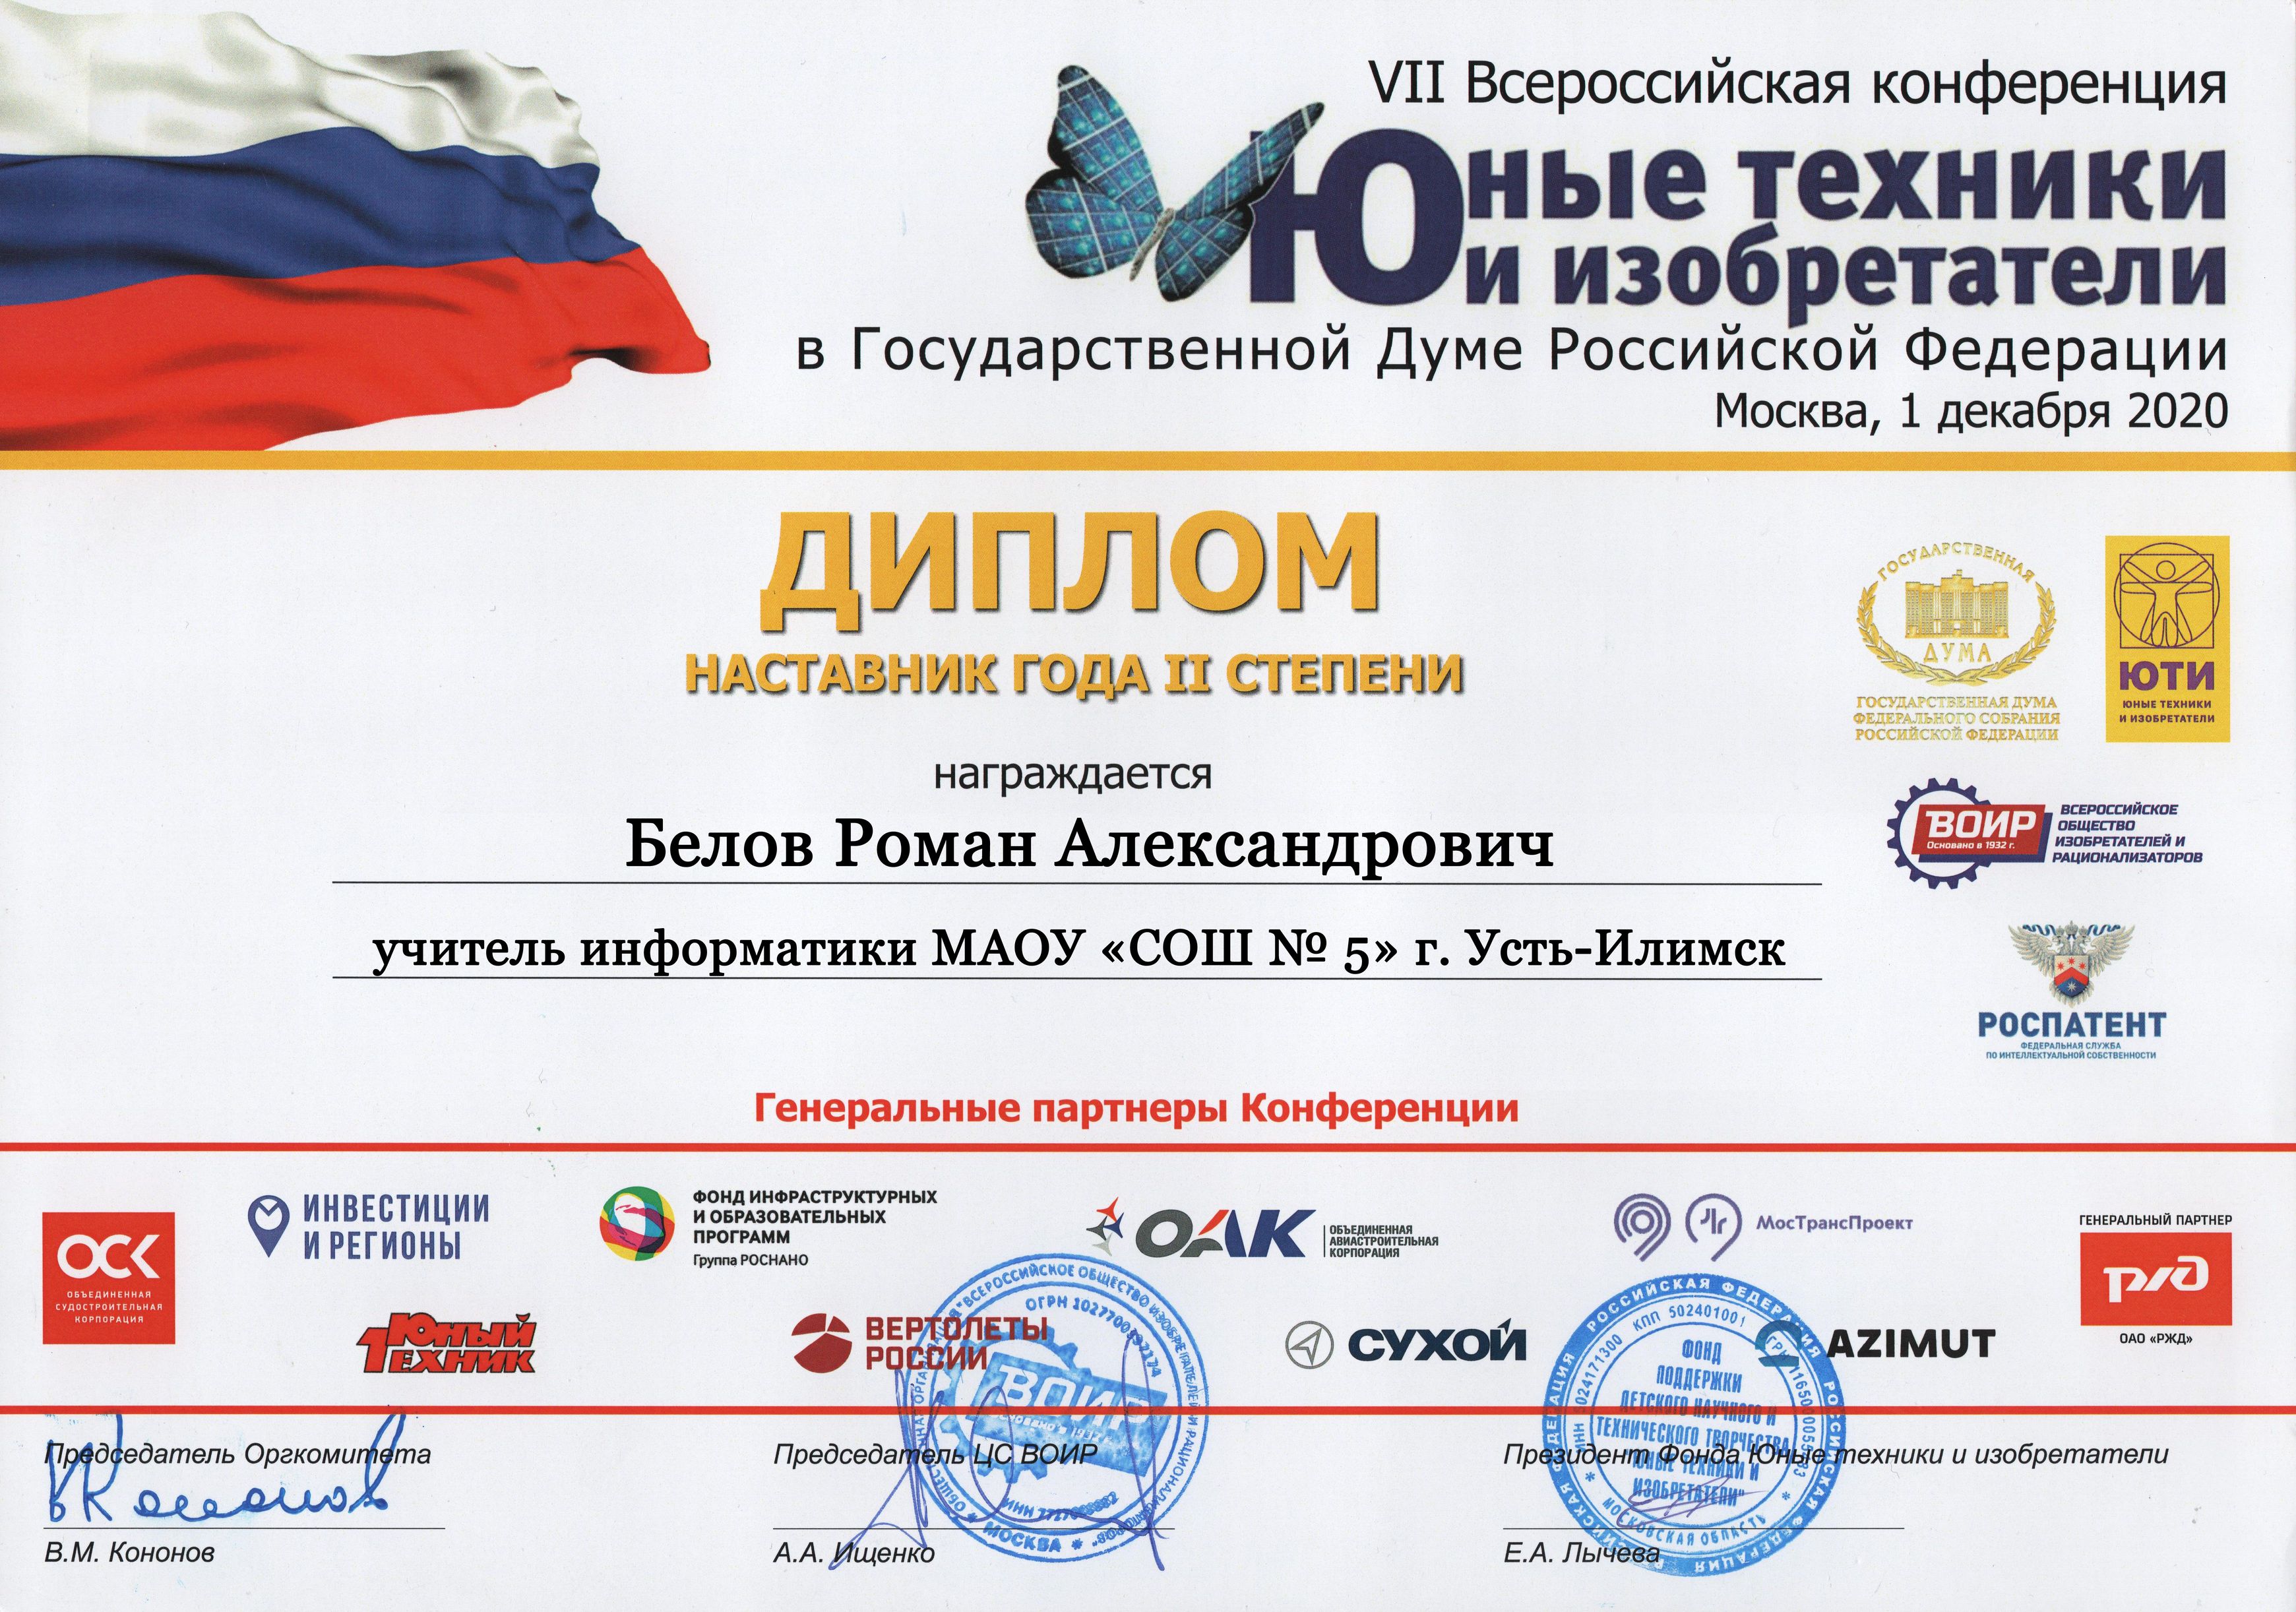 VII Всероссийская конференция 